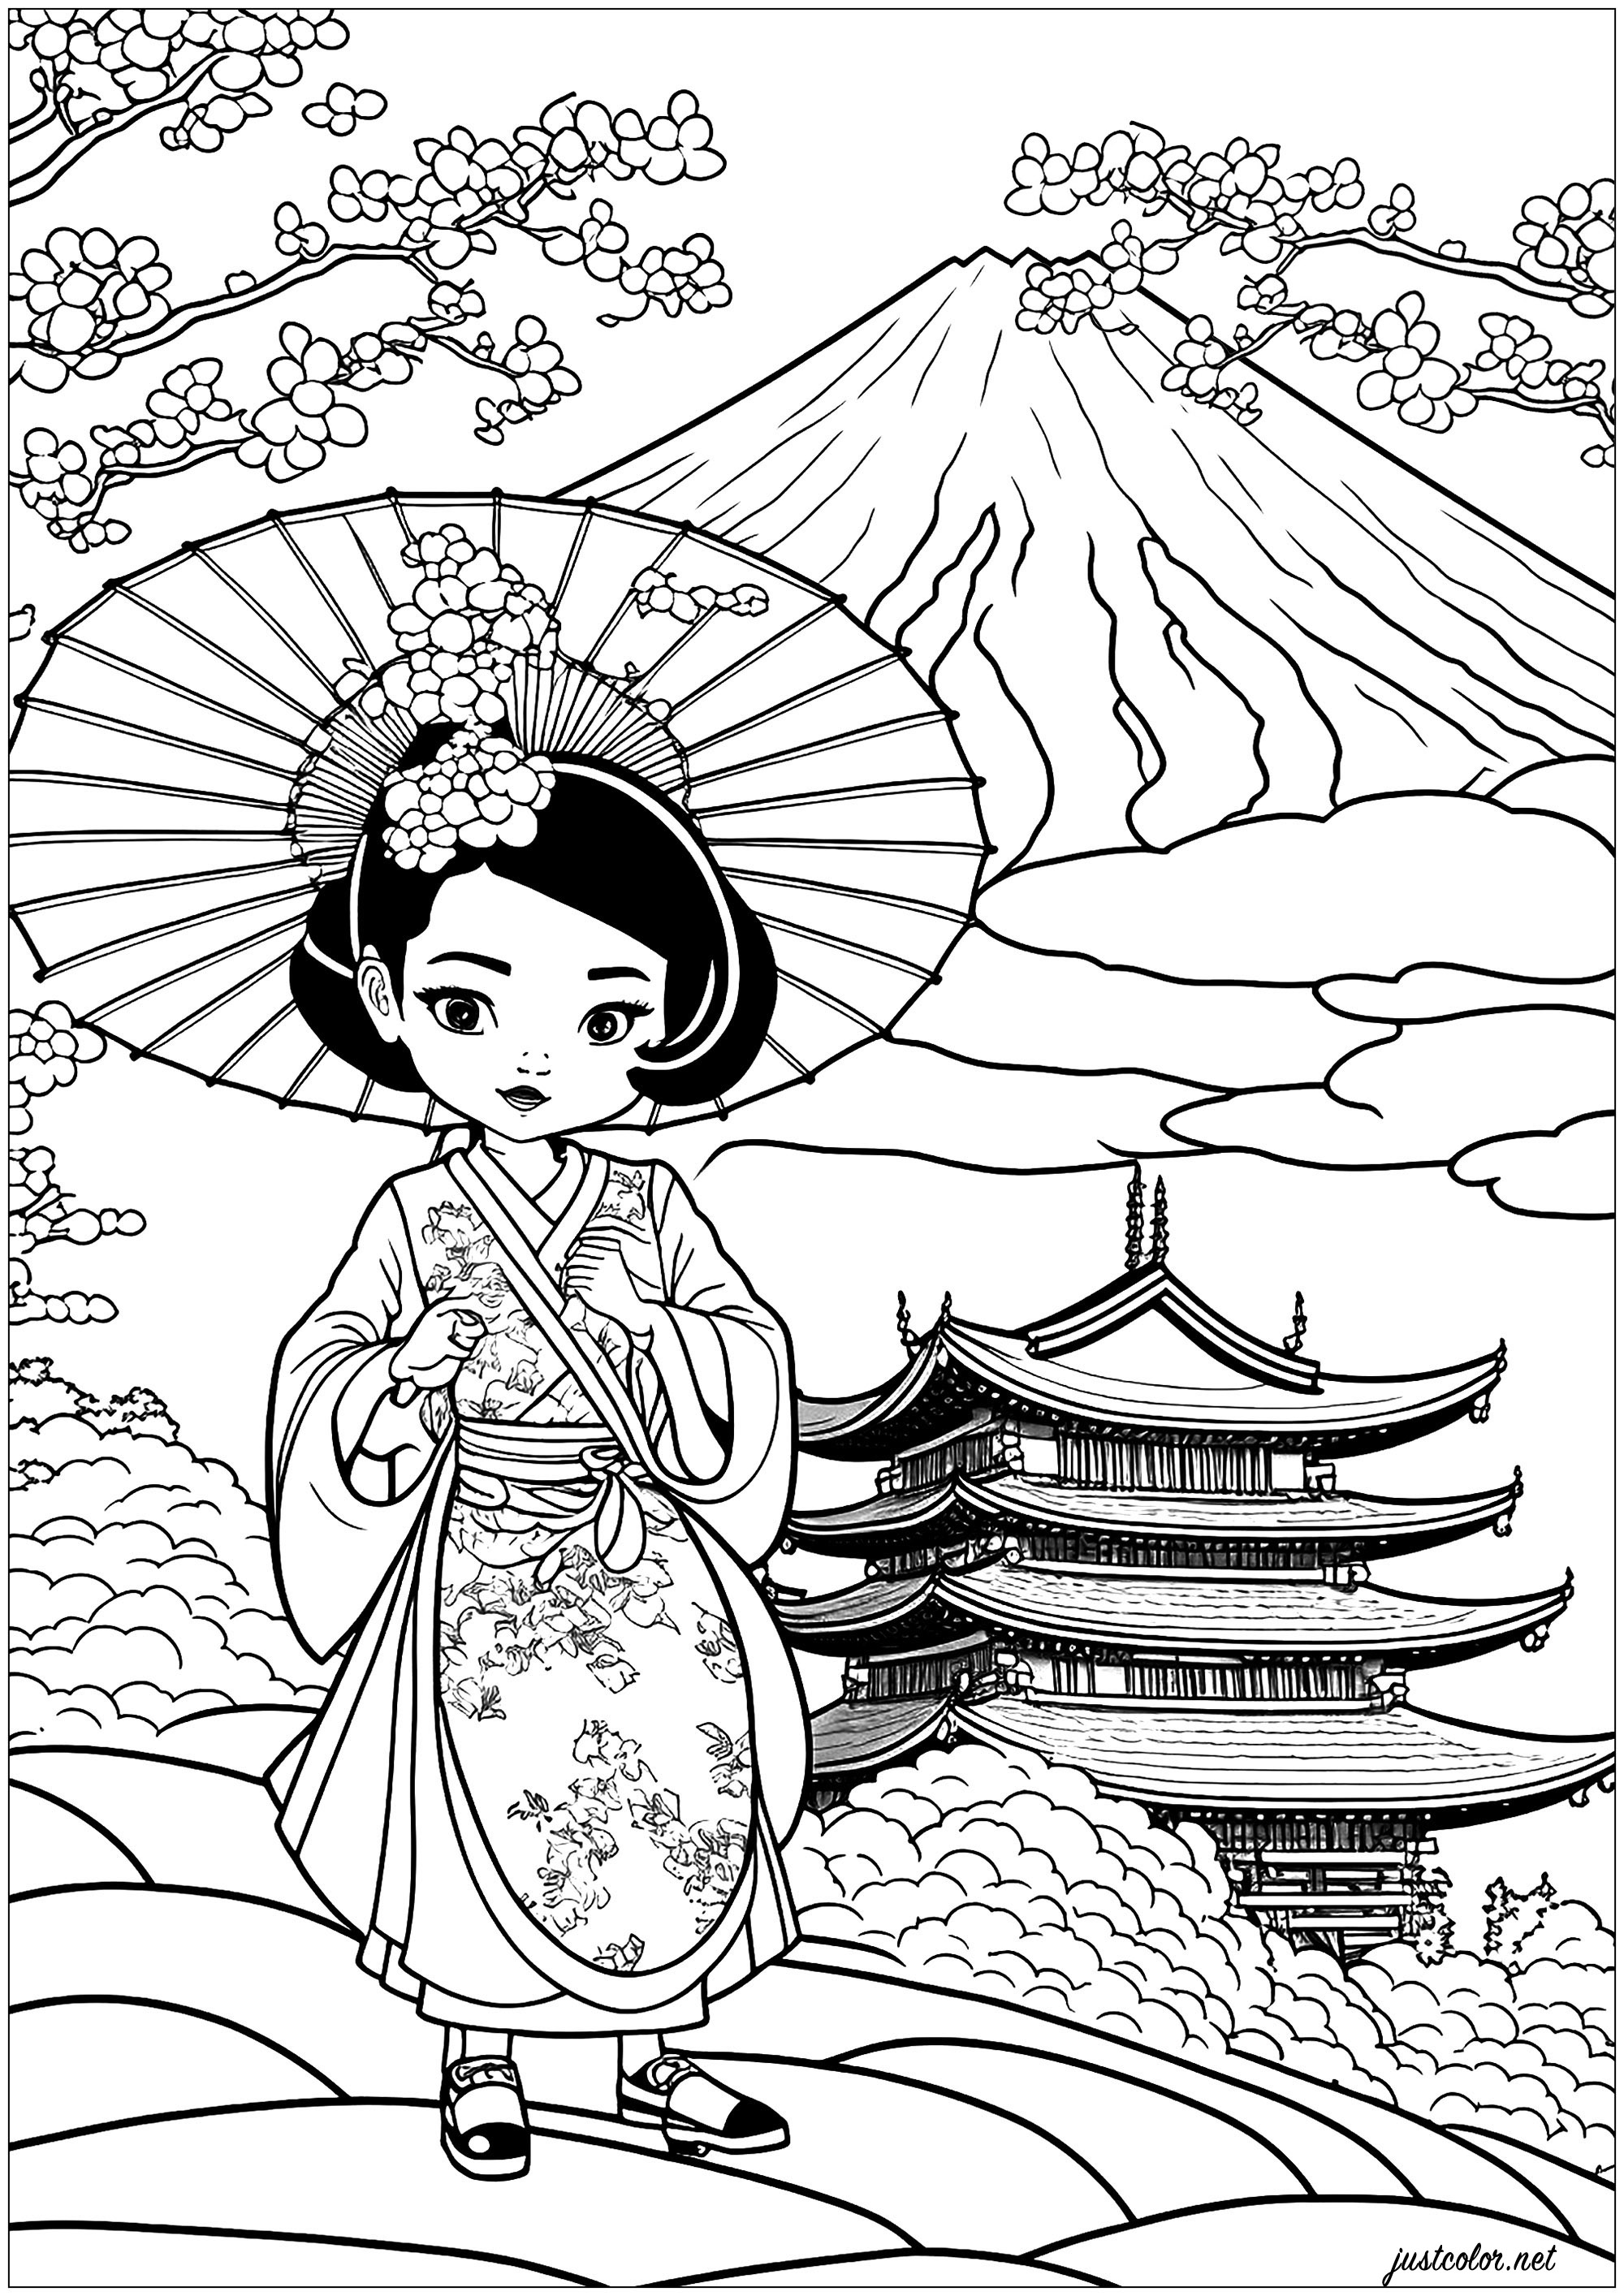 Desenho de gueixa para colorir. Uma complexa página para colorir com uma bela gueixa no seu belo quimono e uma magnífica paisagem japonesa.